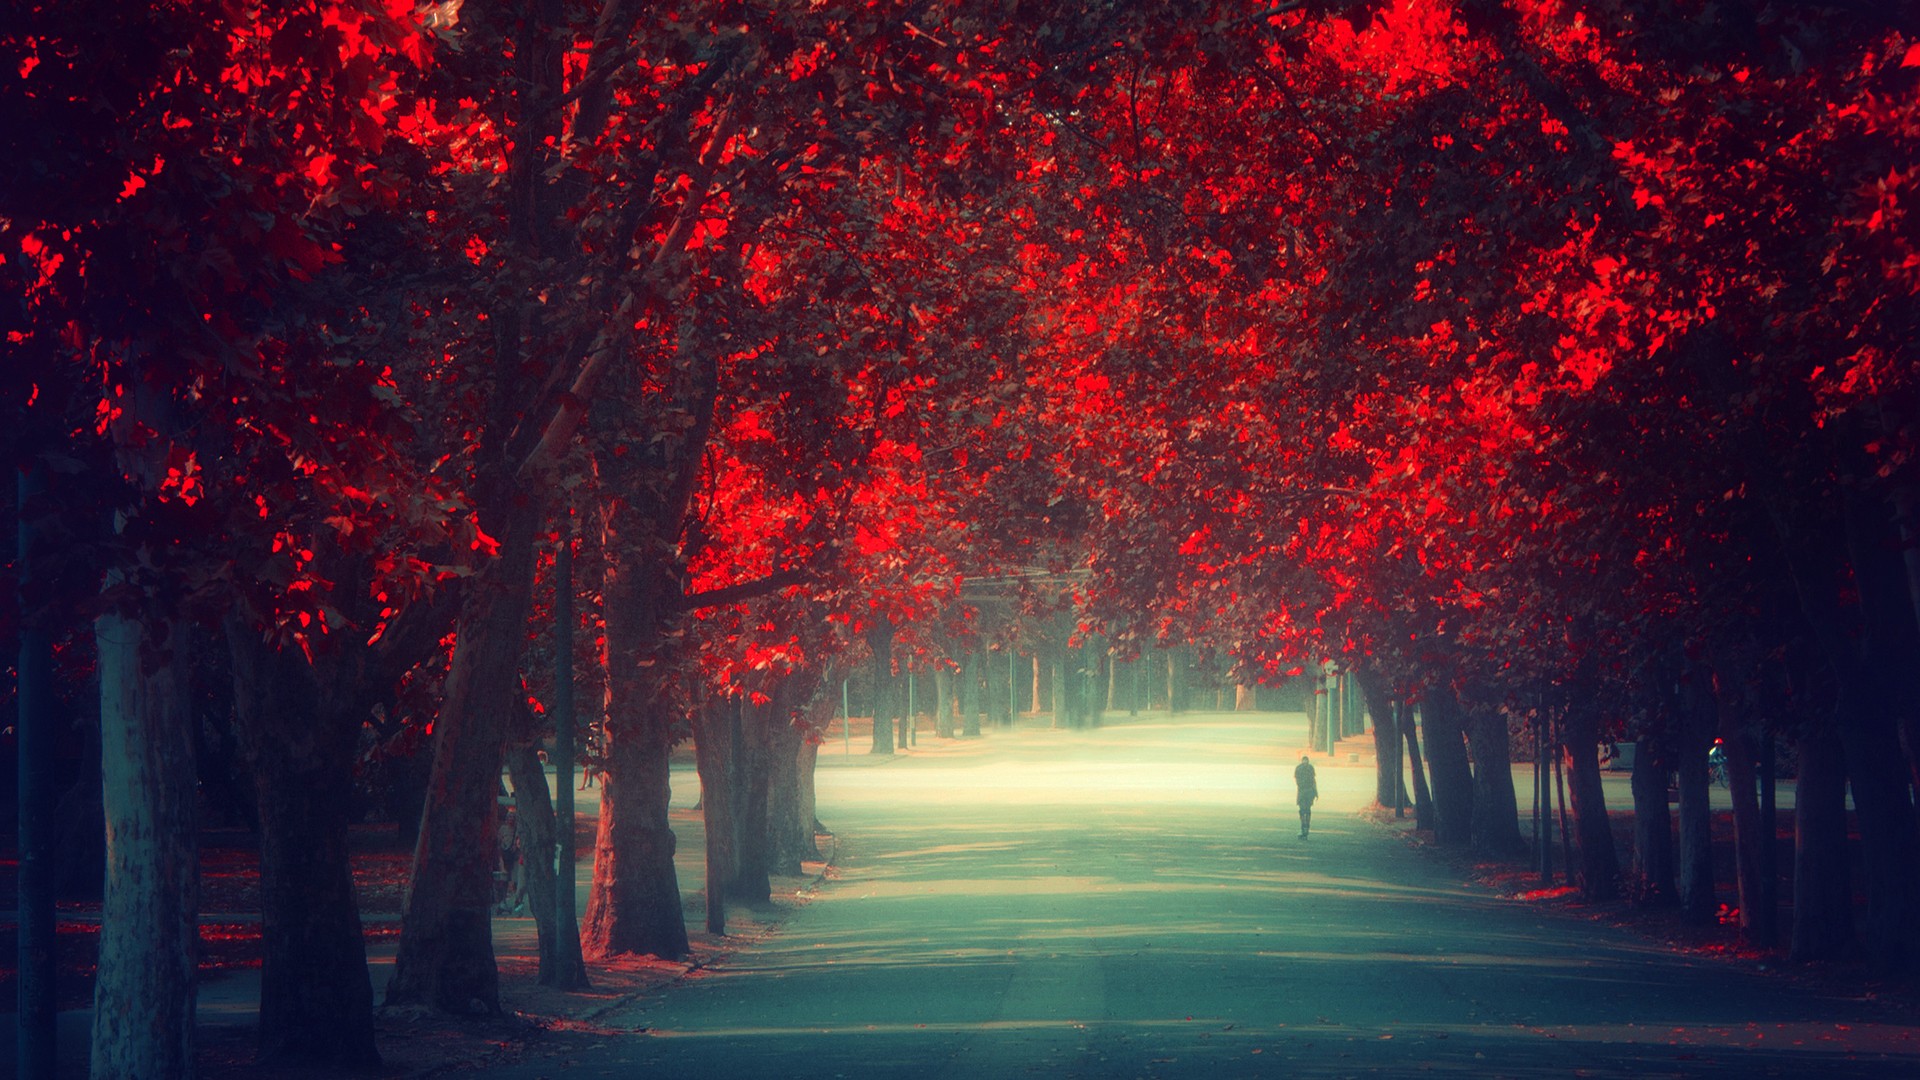 Mùa thu đỏ - một mùa giữa chiều đông và tối đông. Hãy để hình ảnh thu đỏ tràn ngập cảm xúc trong tâm trí bạn, nơi mỗi chi tiết được thể hiện tỉ mỉ và màu sắc trở nên rực rỡ hơn bao giờ hết.